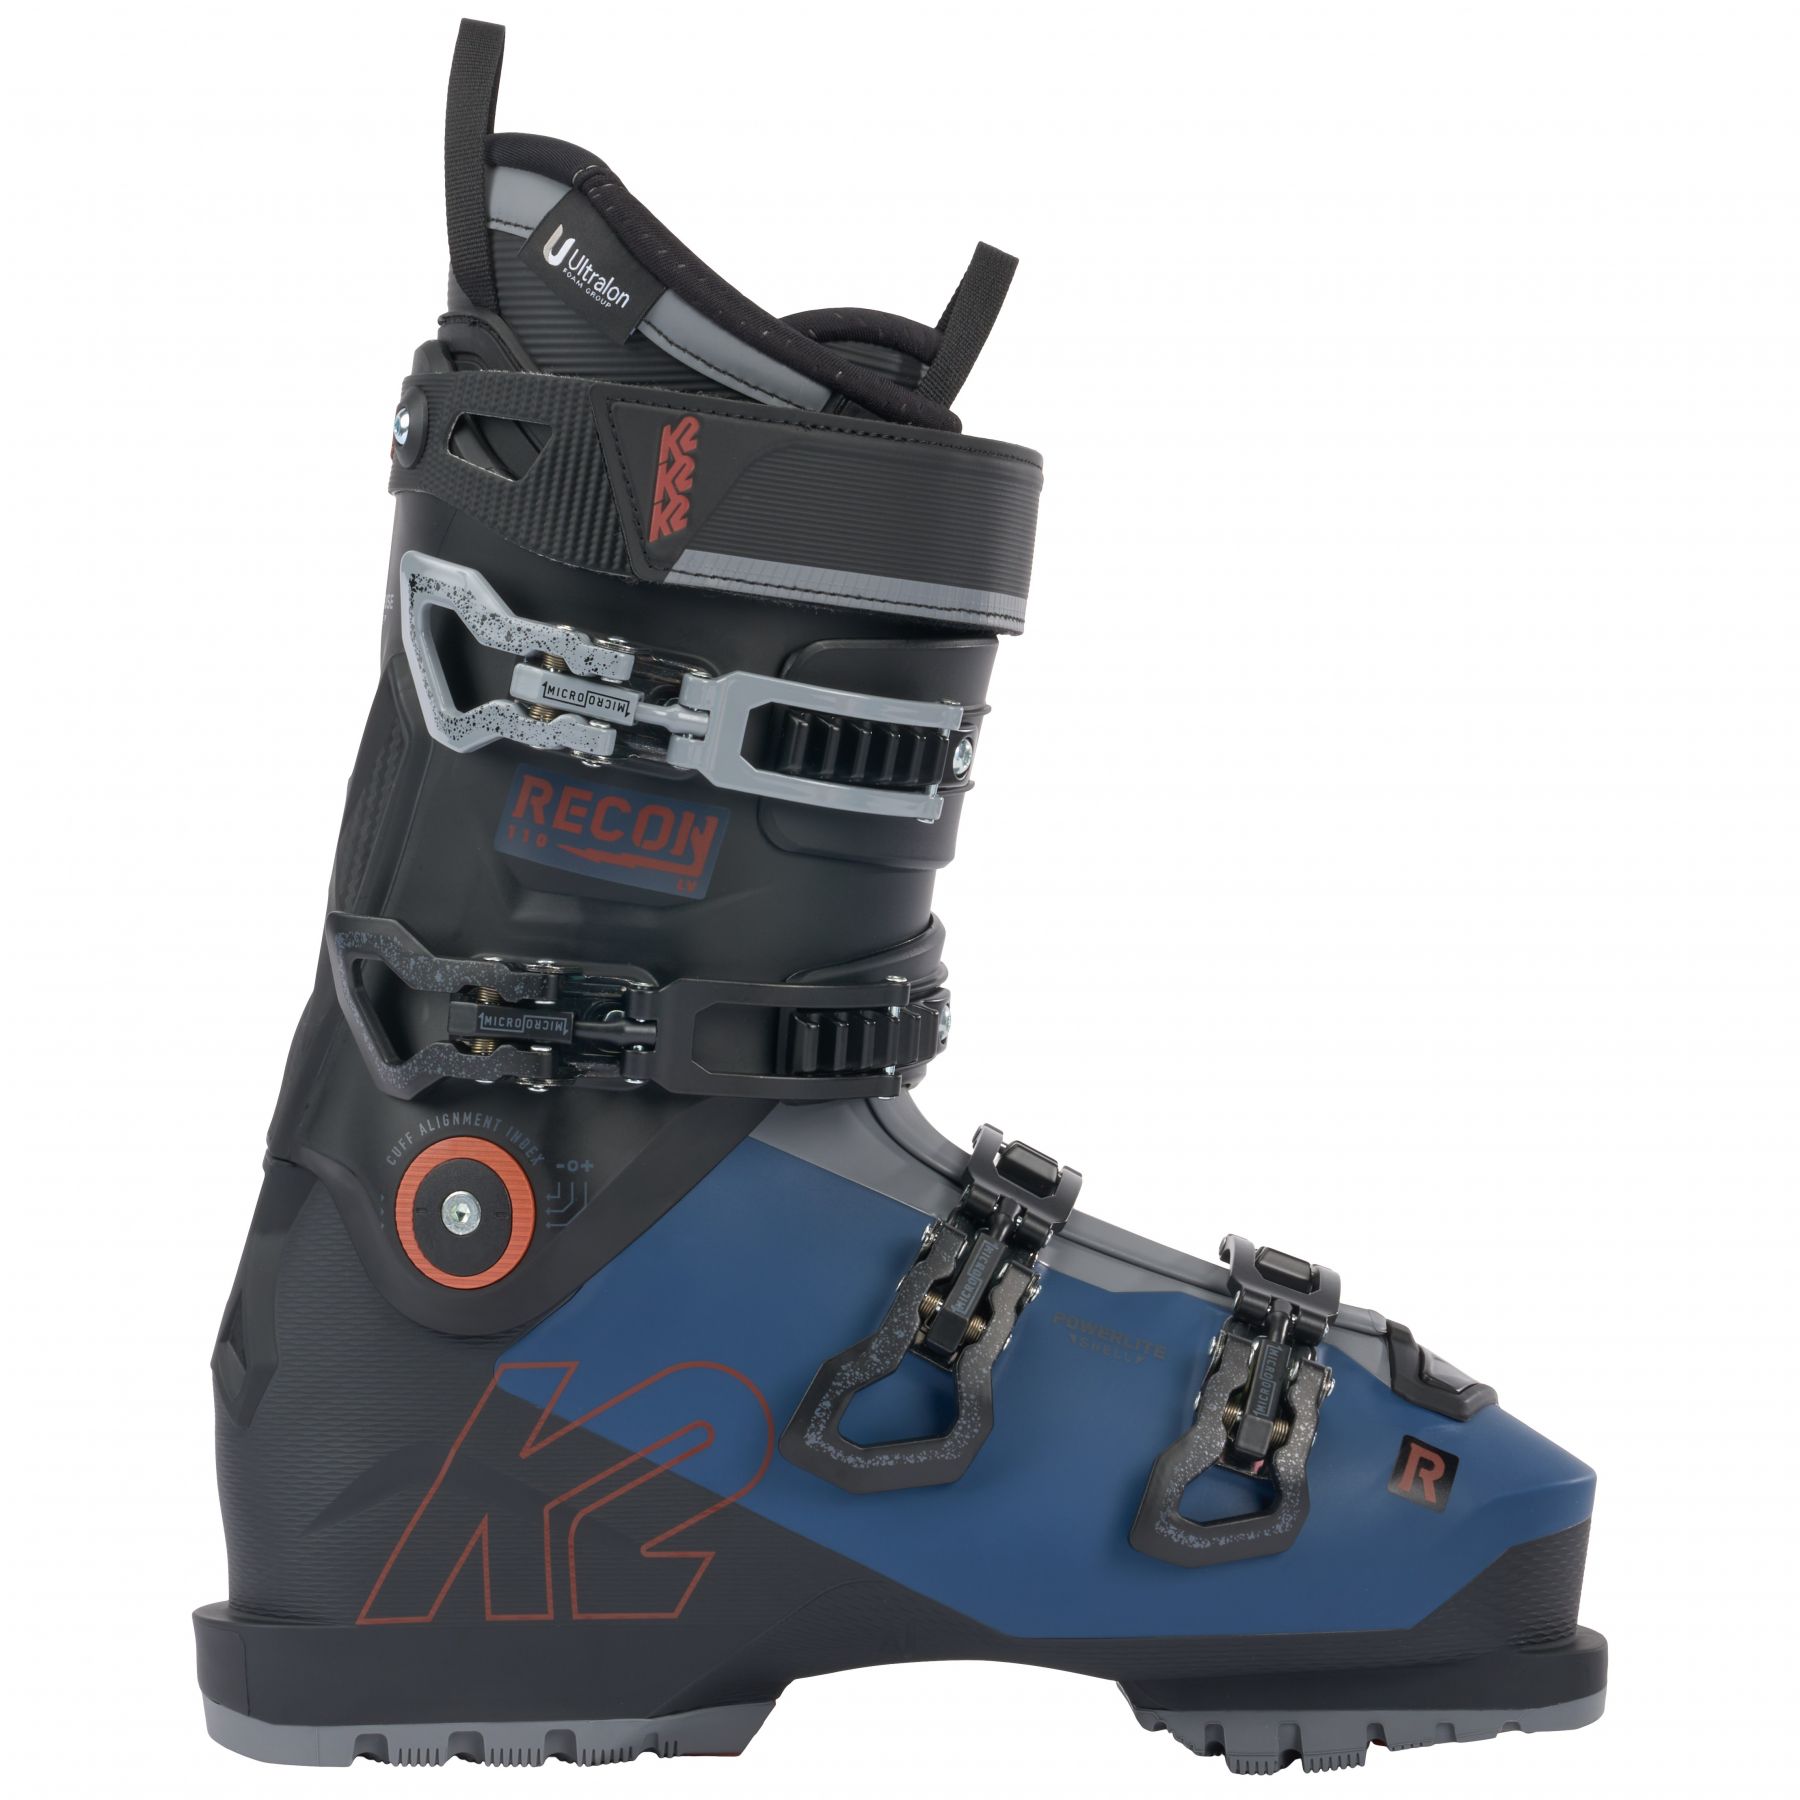 Brug K2 Recon 110 LV, skistøvler, herre, mørkeblå/sort til en forbedret oplevelse